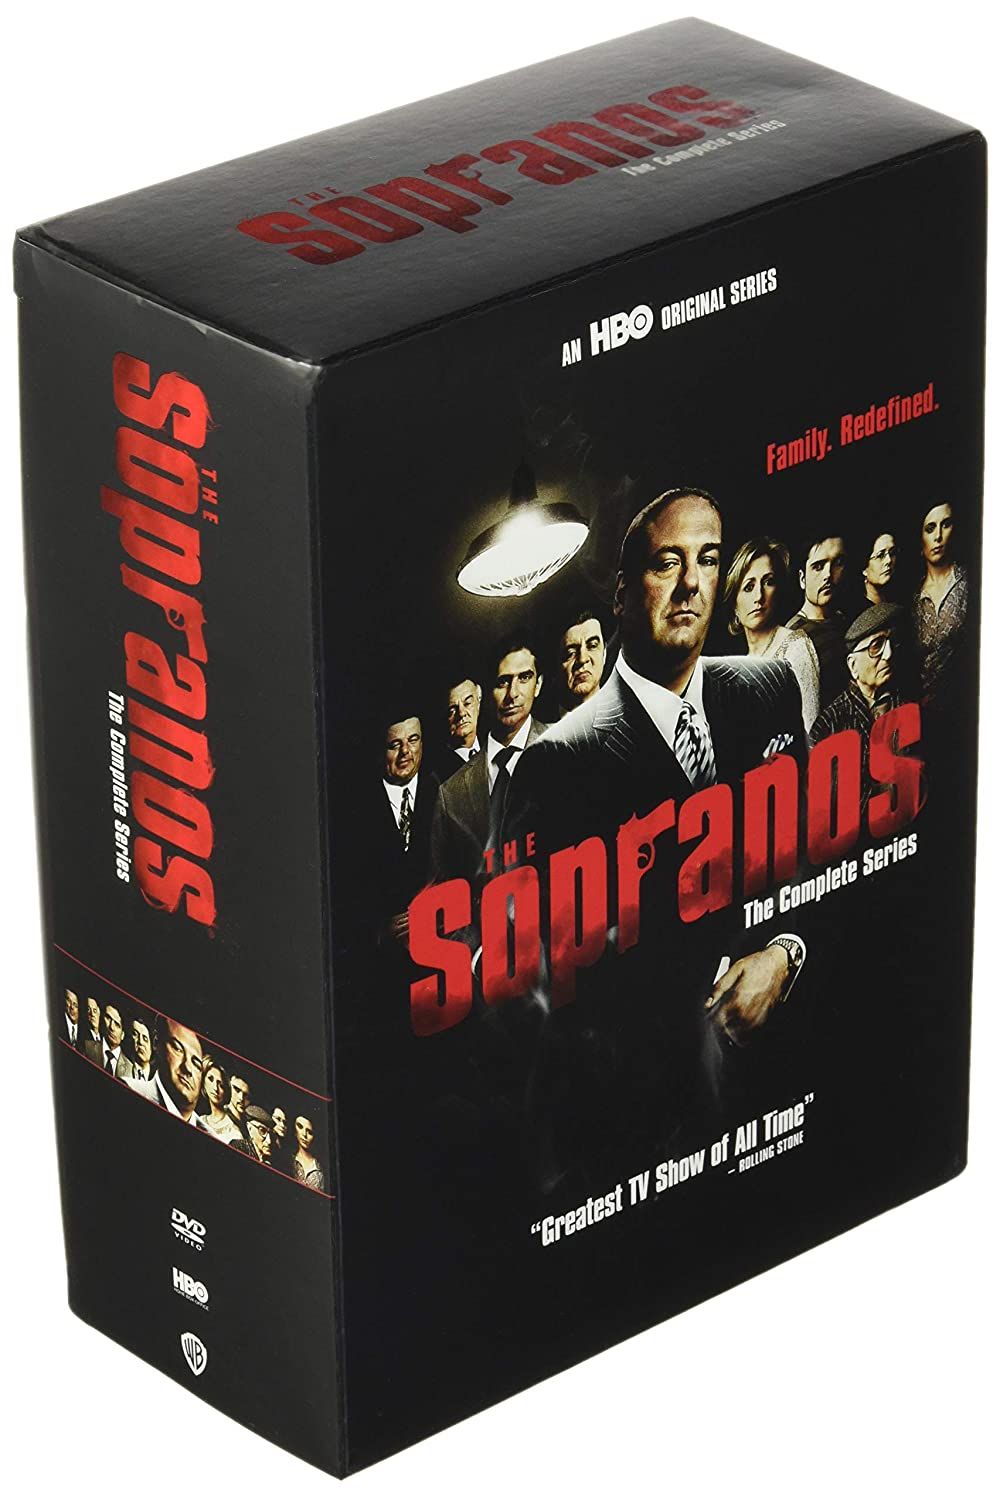 The Sopranos best DVD set